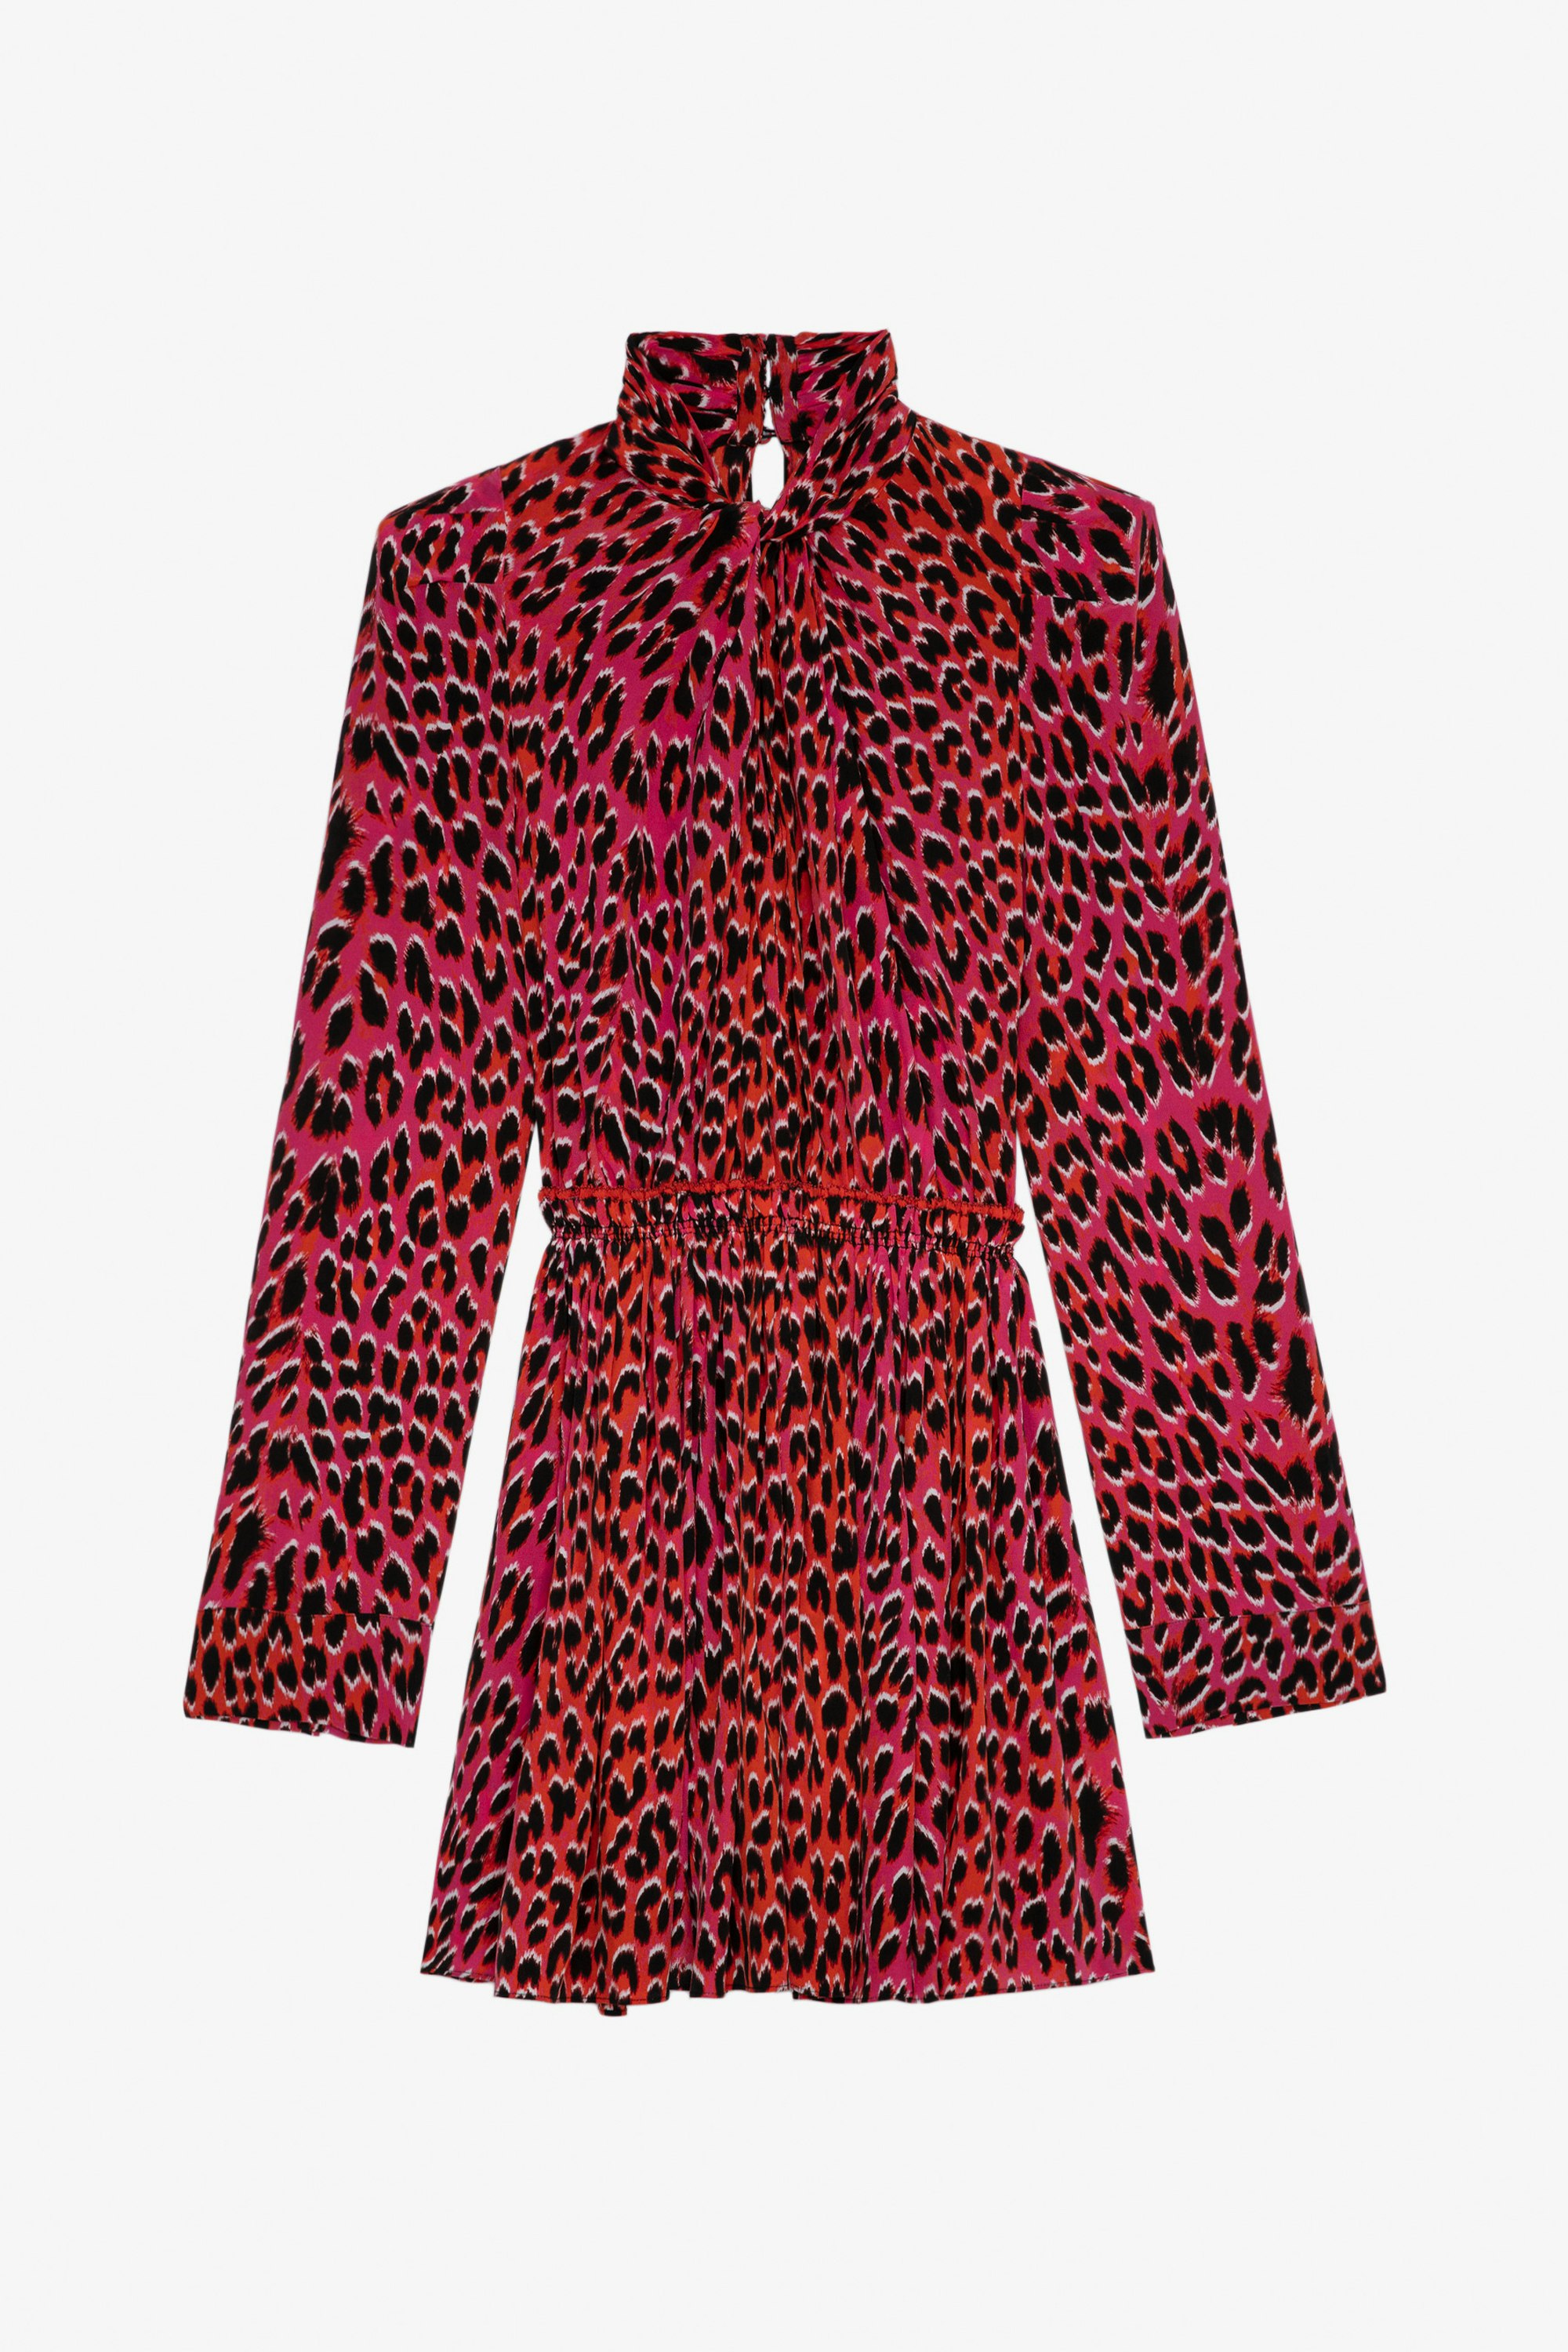 Abito Ryde Leopardato Seta - Abito corto da donna in seta rosa con motivo leopardato e colletto alla lavallière.